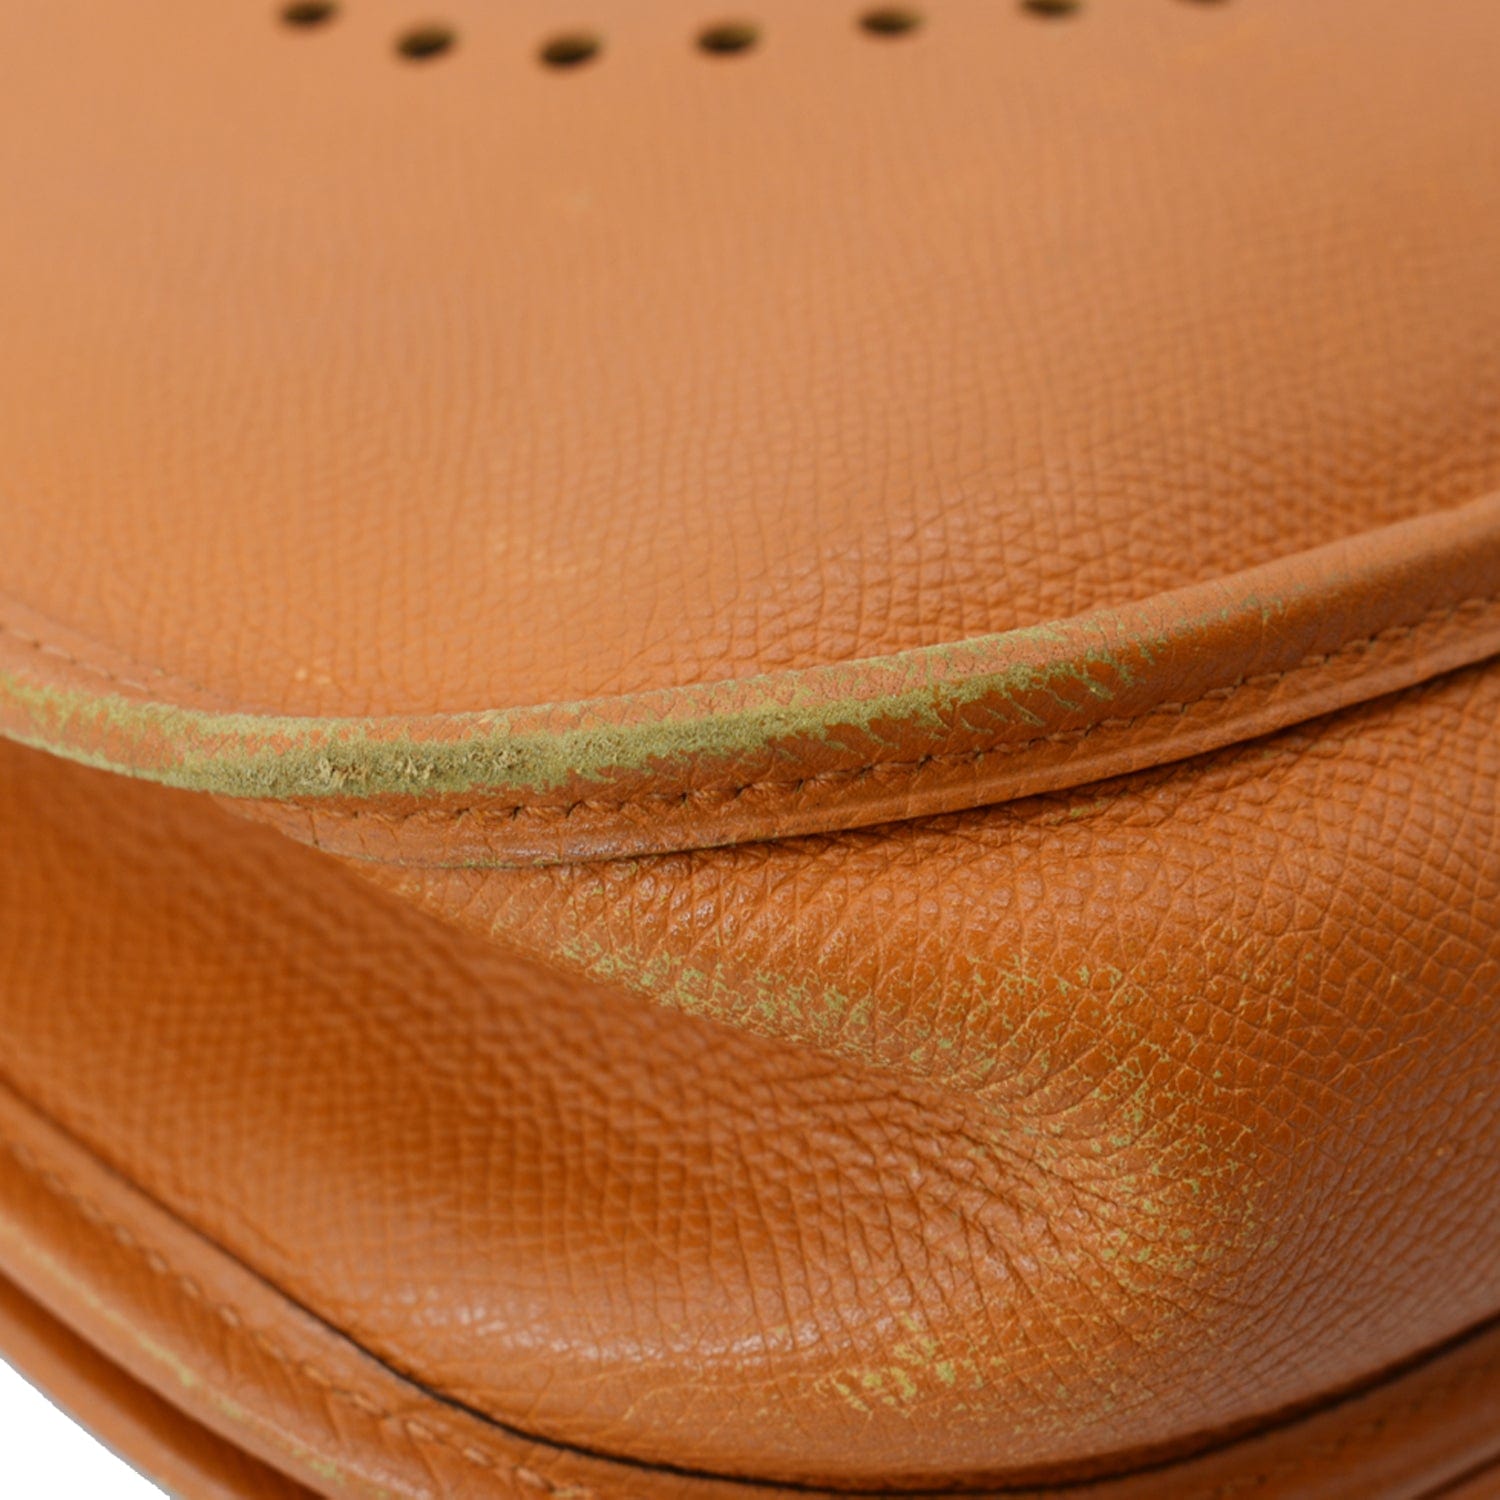 Hermes Evelyne PM Bag Feu Orange Palladium Hardware Clemence Leather –  Mightychic